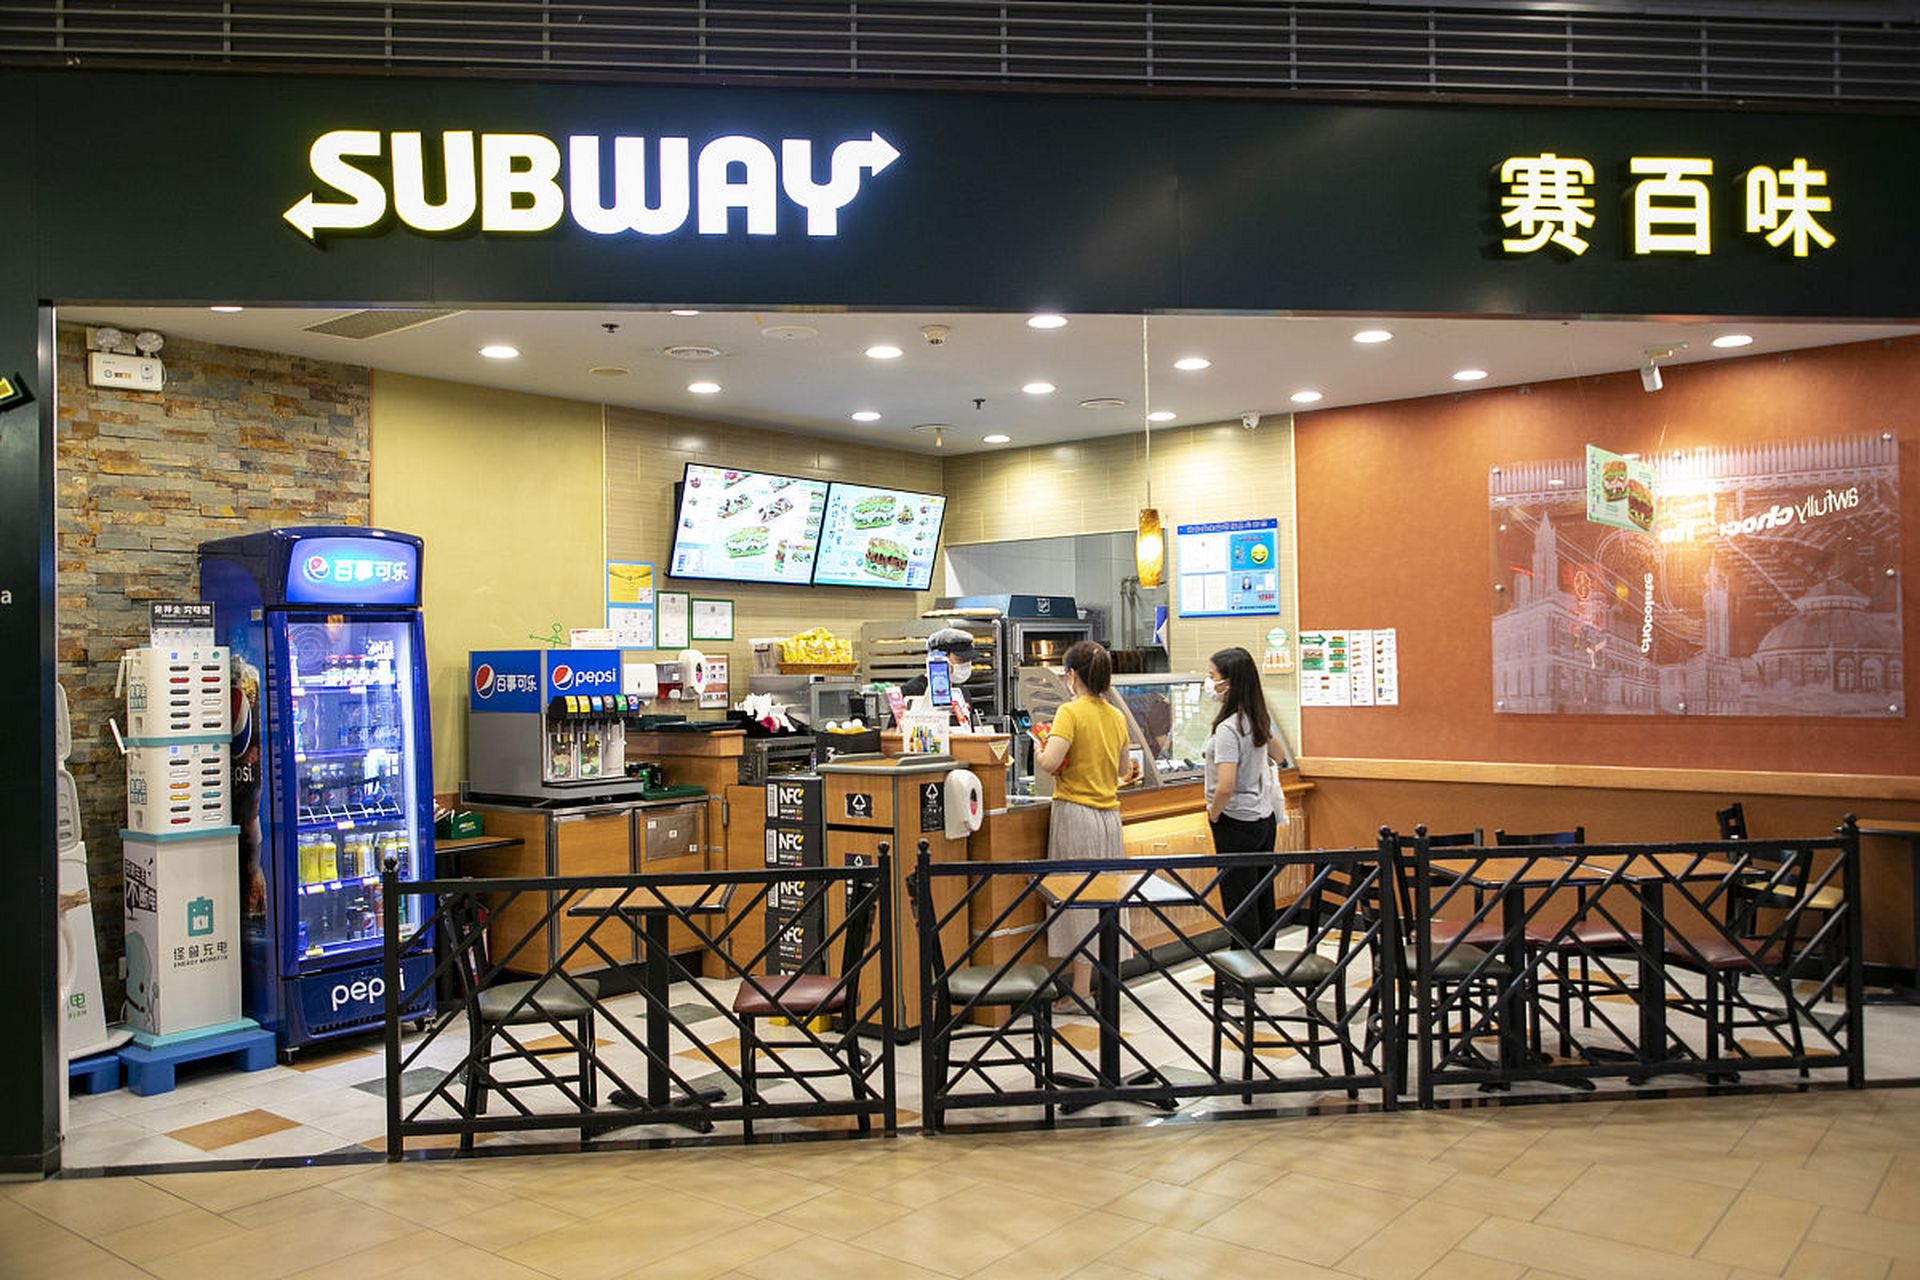 赛百味计划在中国开设4000个新门店  这是该三明治连锁店历史上最大的